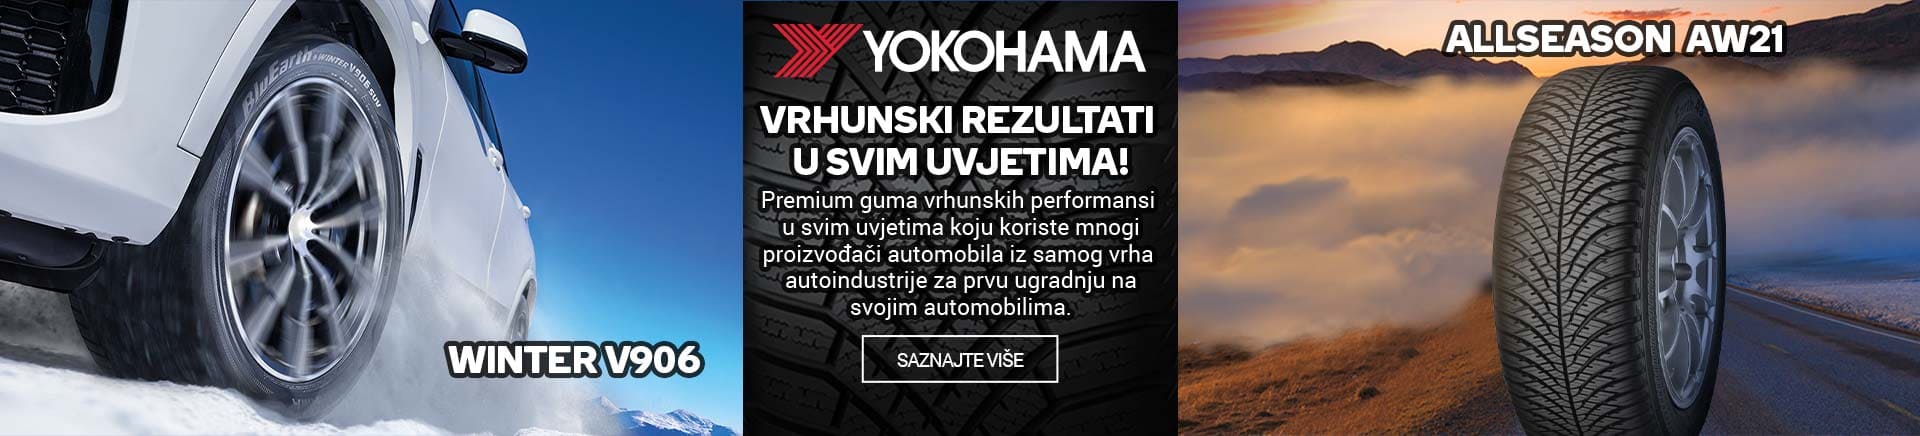 Yokohama gume - Vrhunski rezultati u svim uvjetima !